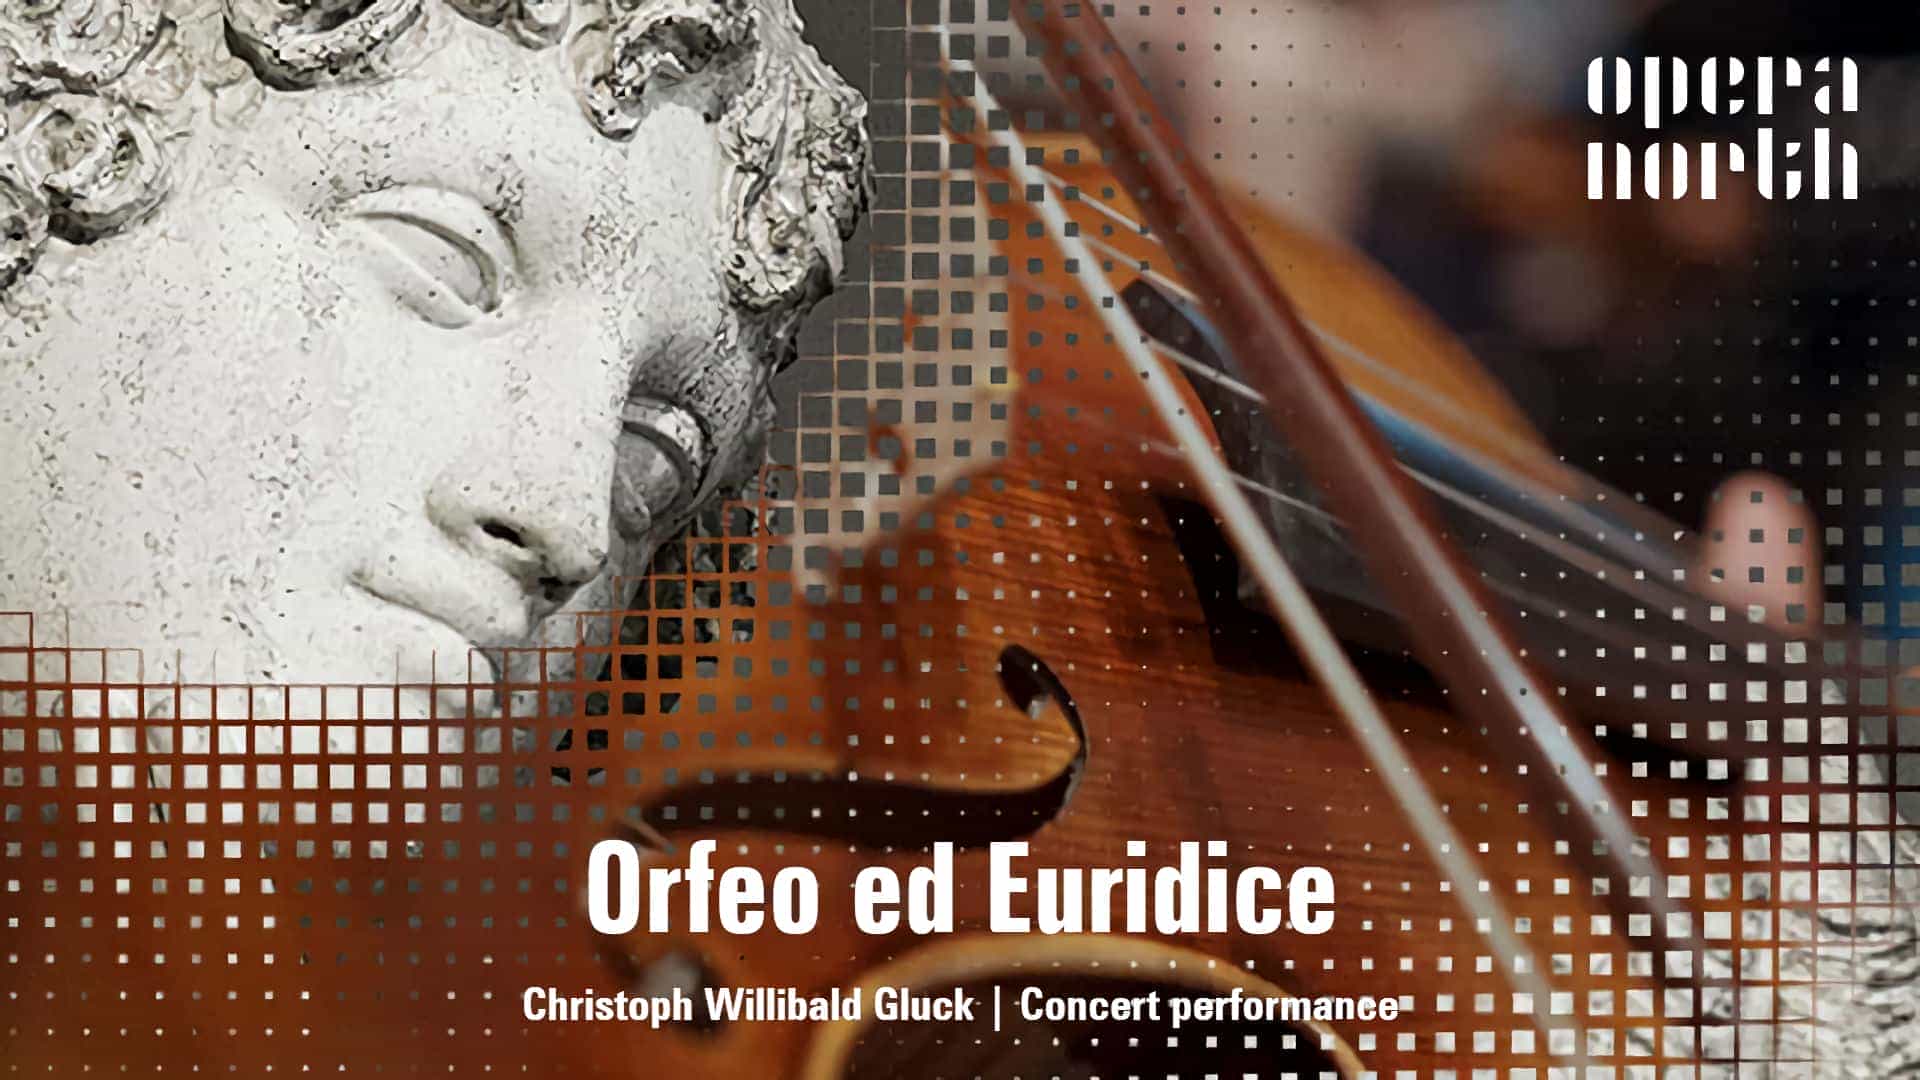 Opera North - Orfeo ed Euridice